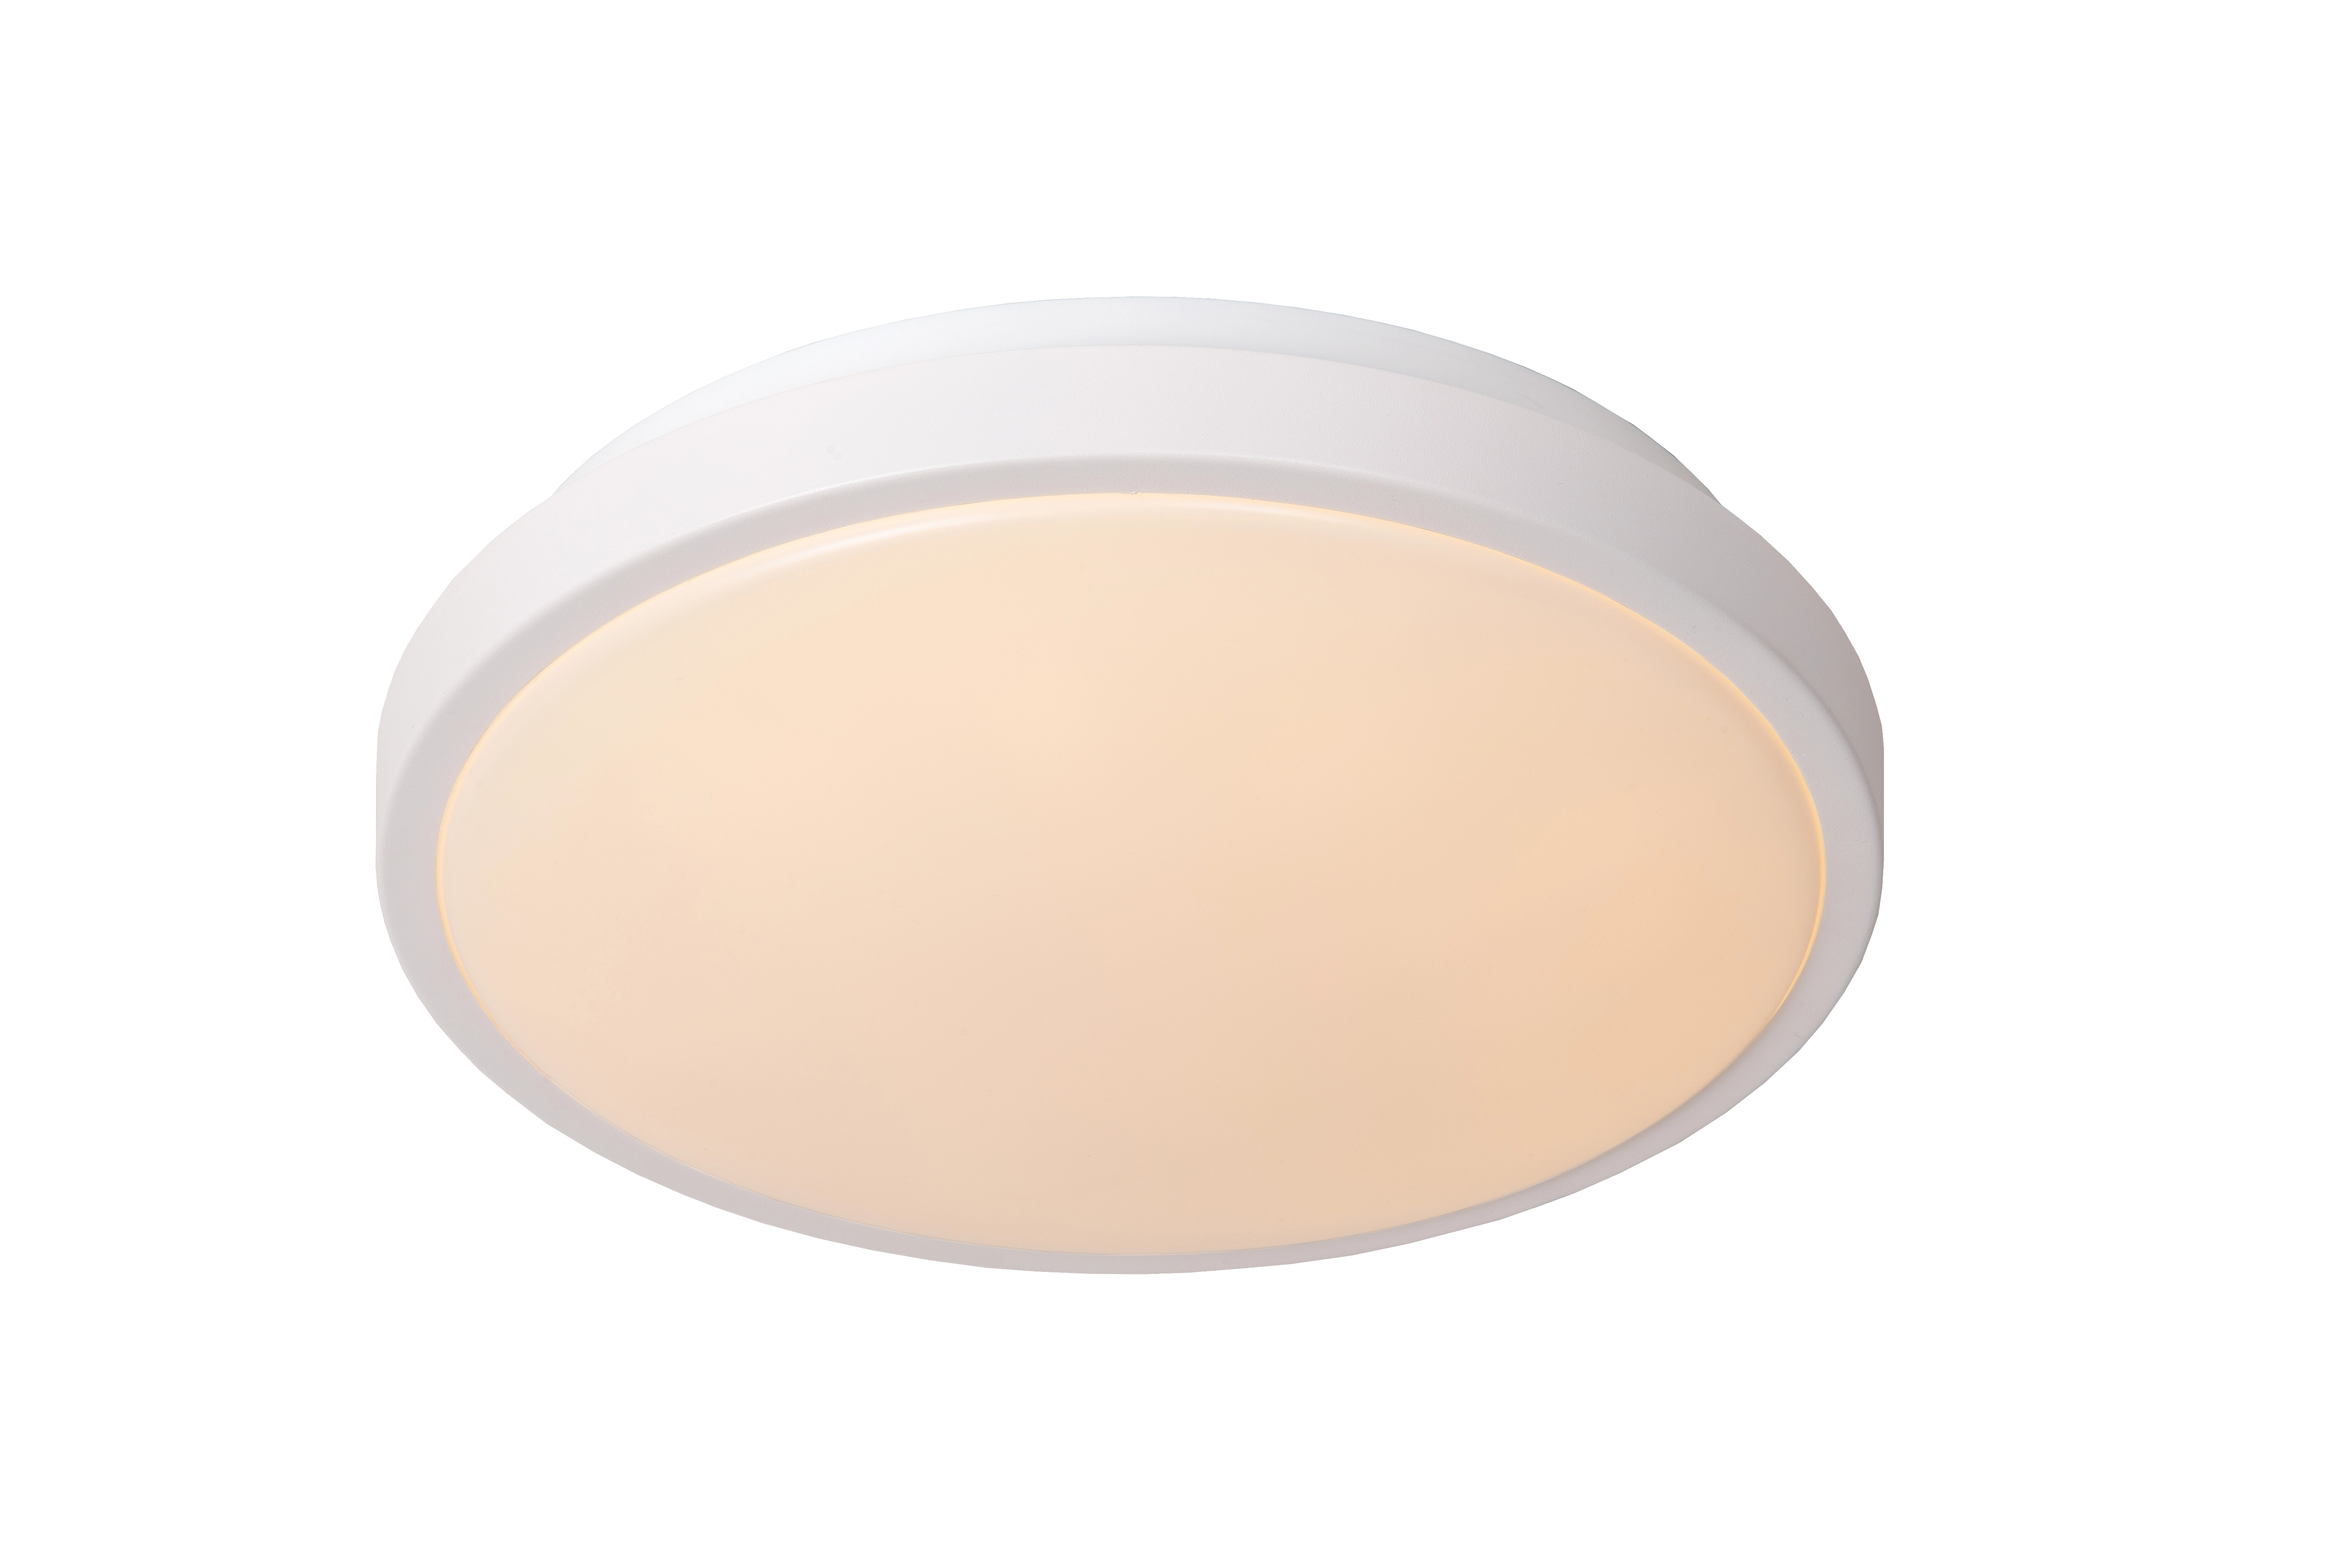 LU 79110/30/31 Lucide DASHER - Flush ceiling light Bathroom - Ø 29,3 cm - LED - 1x12W 2700K - IP44 - White